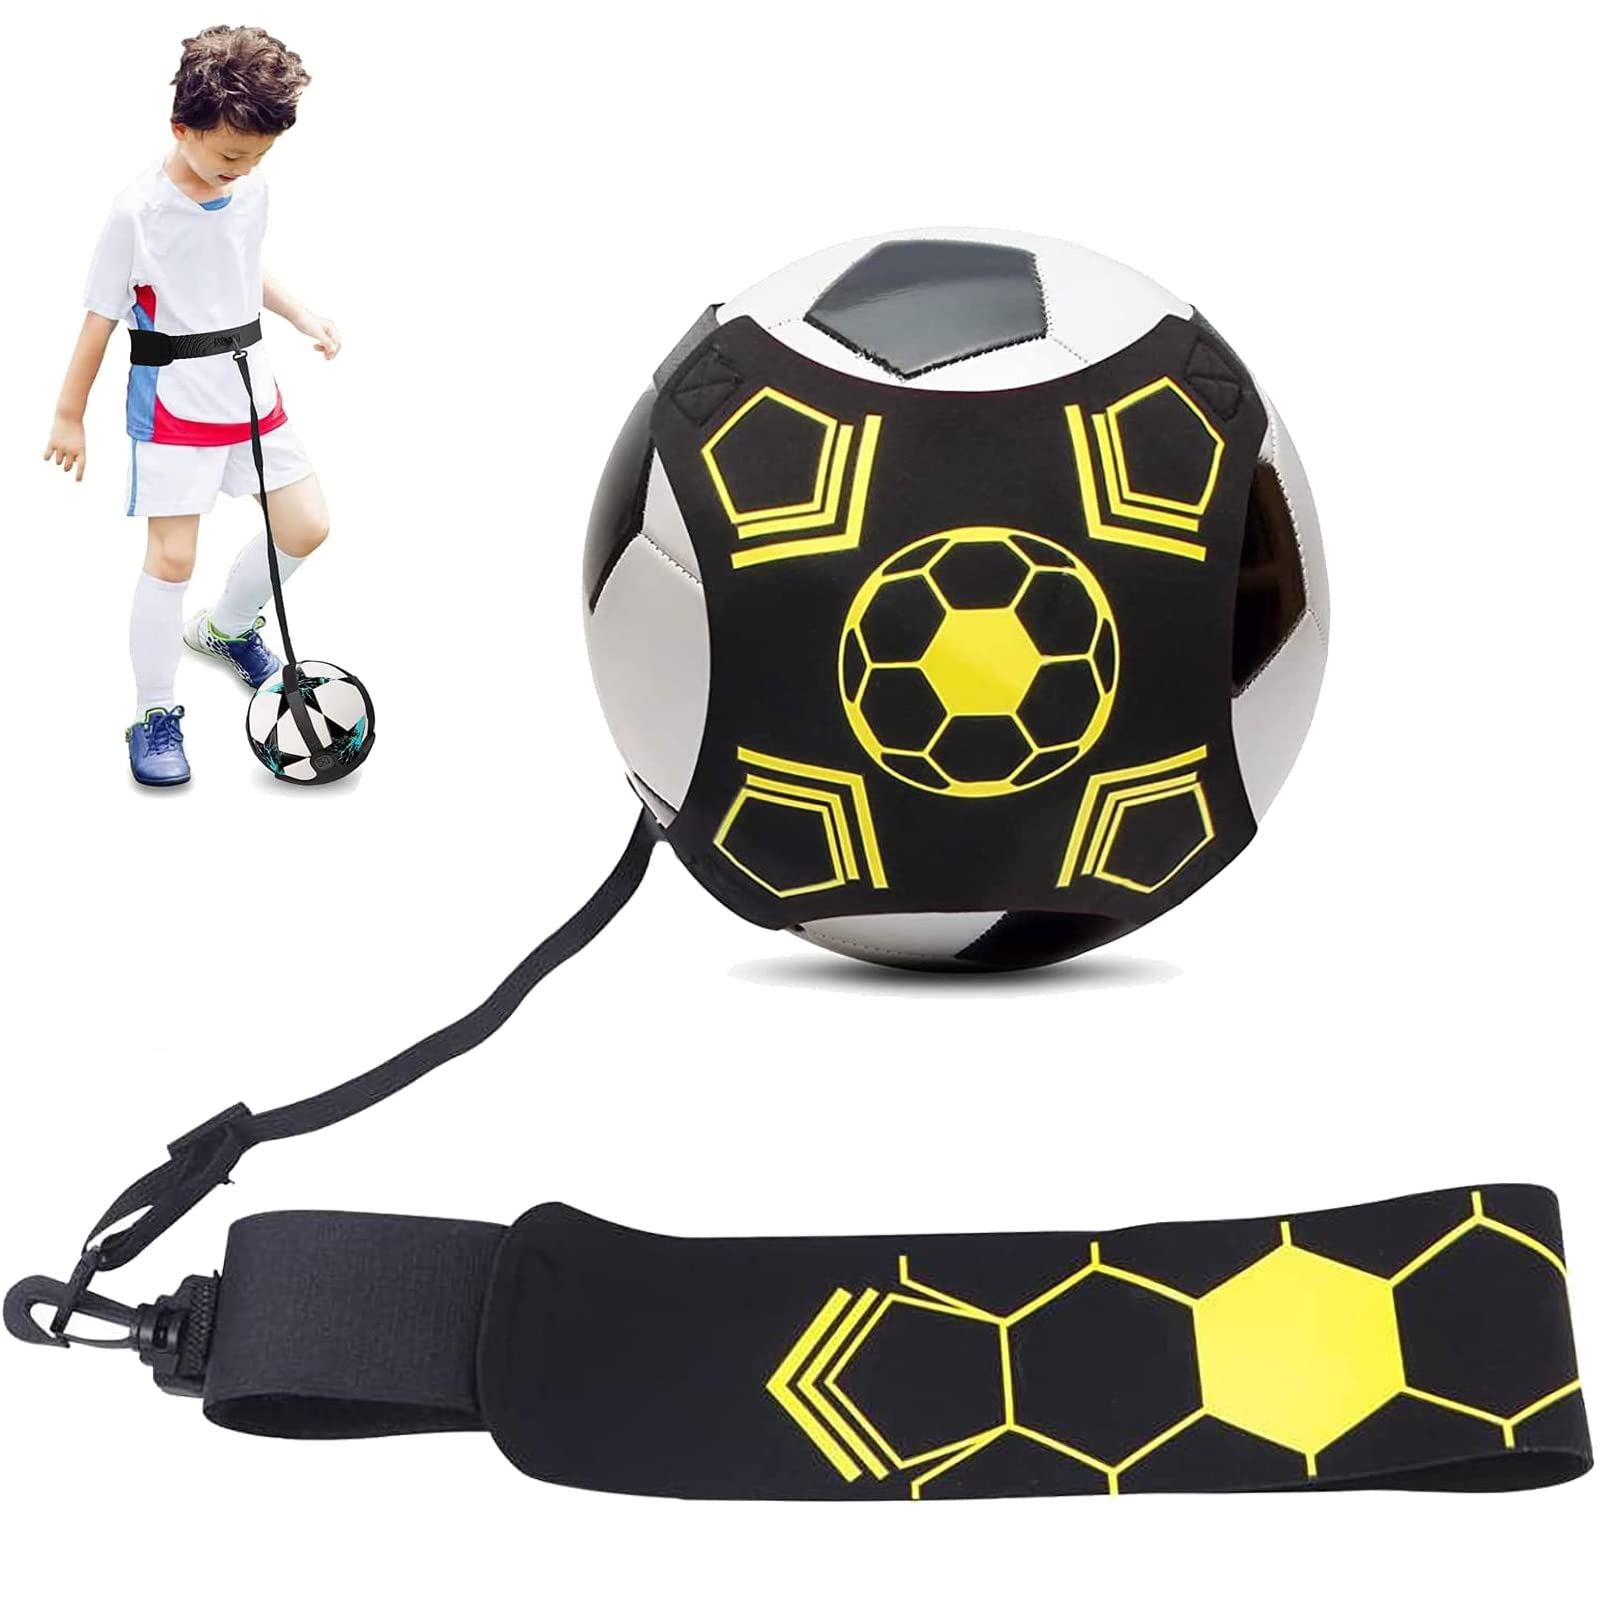 サッカートレーニングベルト サッカーキックトレーナー 練習キット ファミリースポーツ ボール自主練用 調節可能 トレーニングベルト 通販 